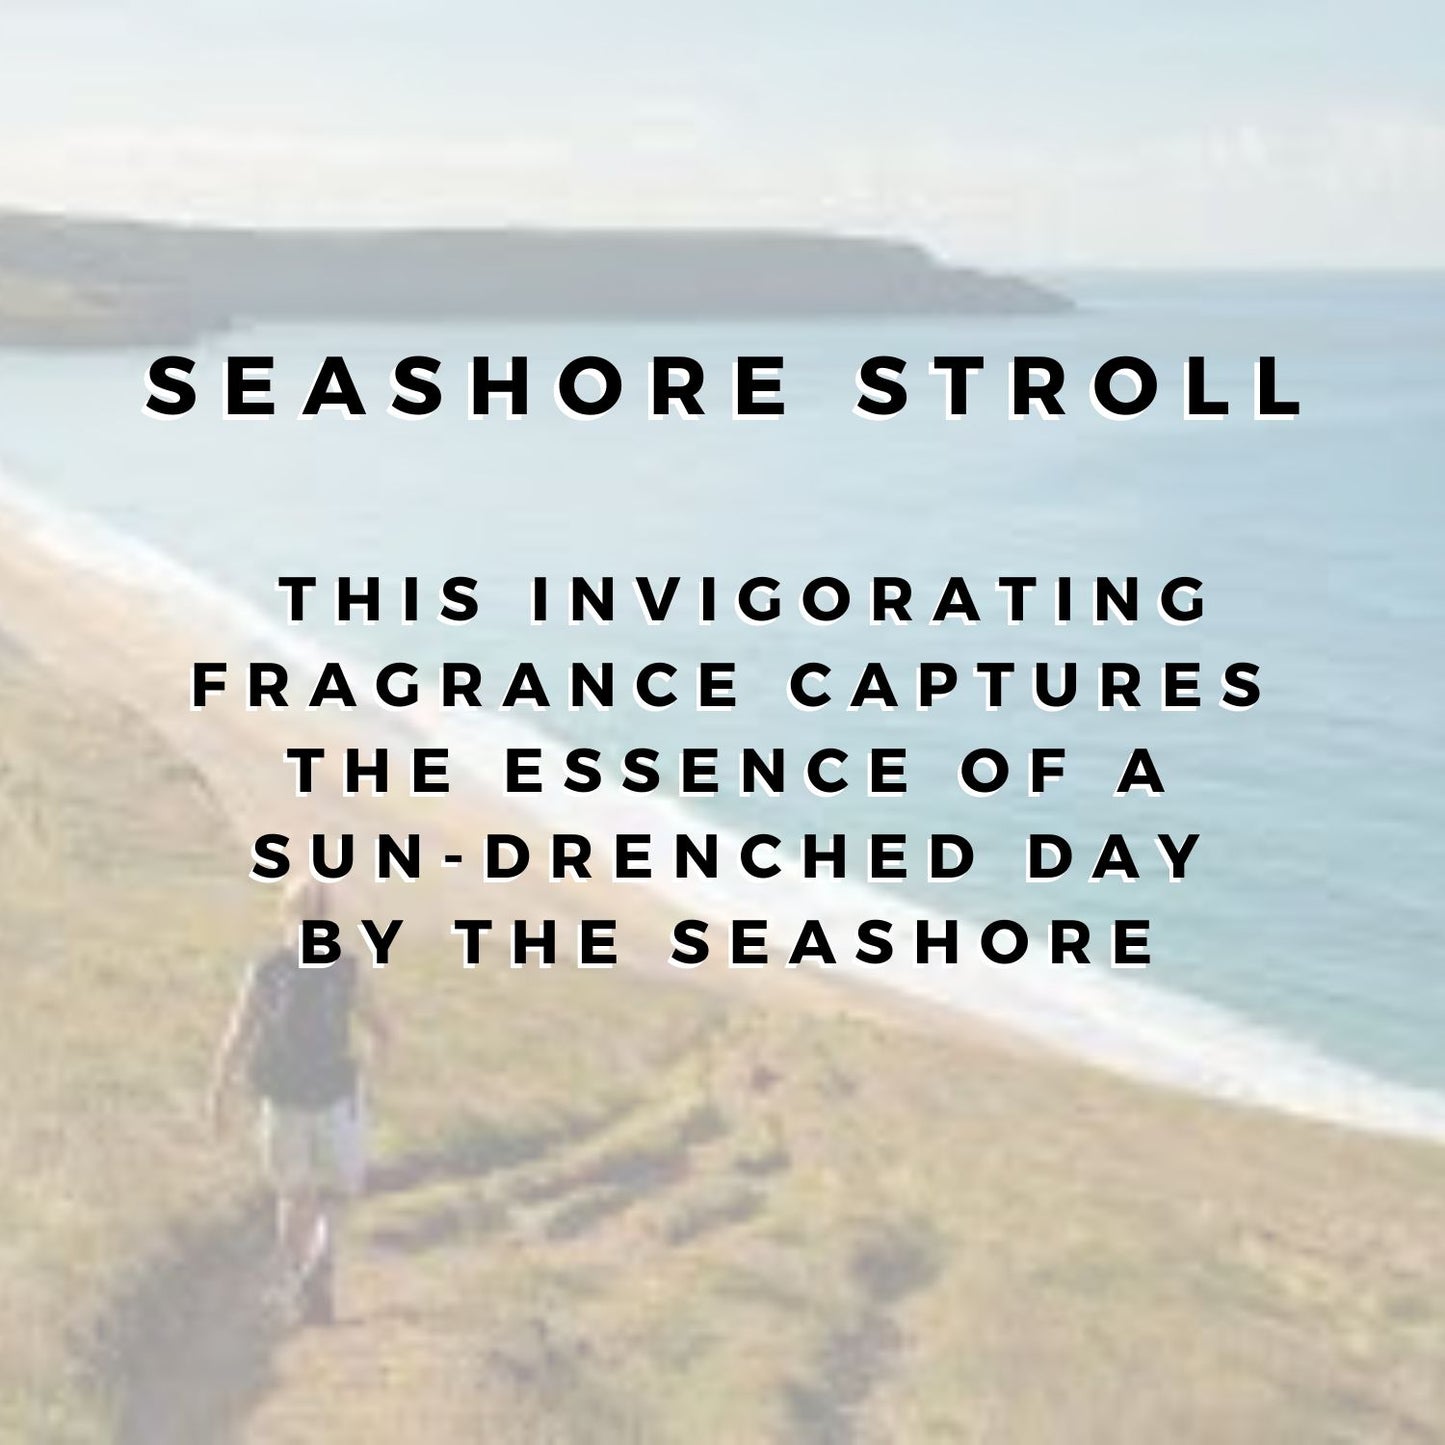 Seashore Stroll Wax Bar